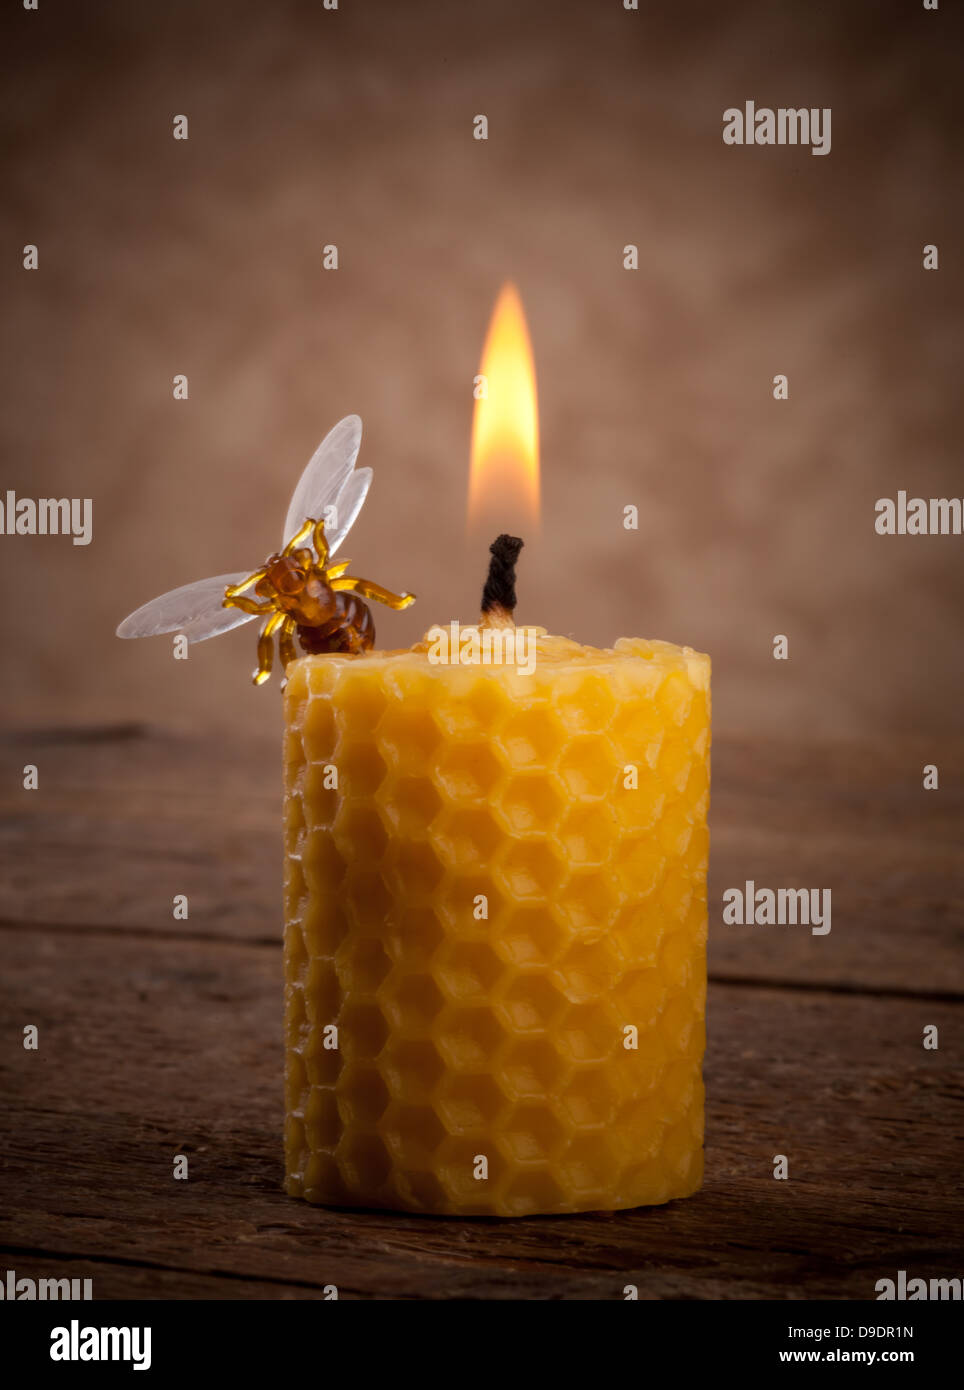 Candele della cera d'api immagine stock. Immagine di candela - 36632141